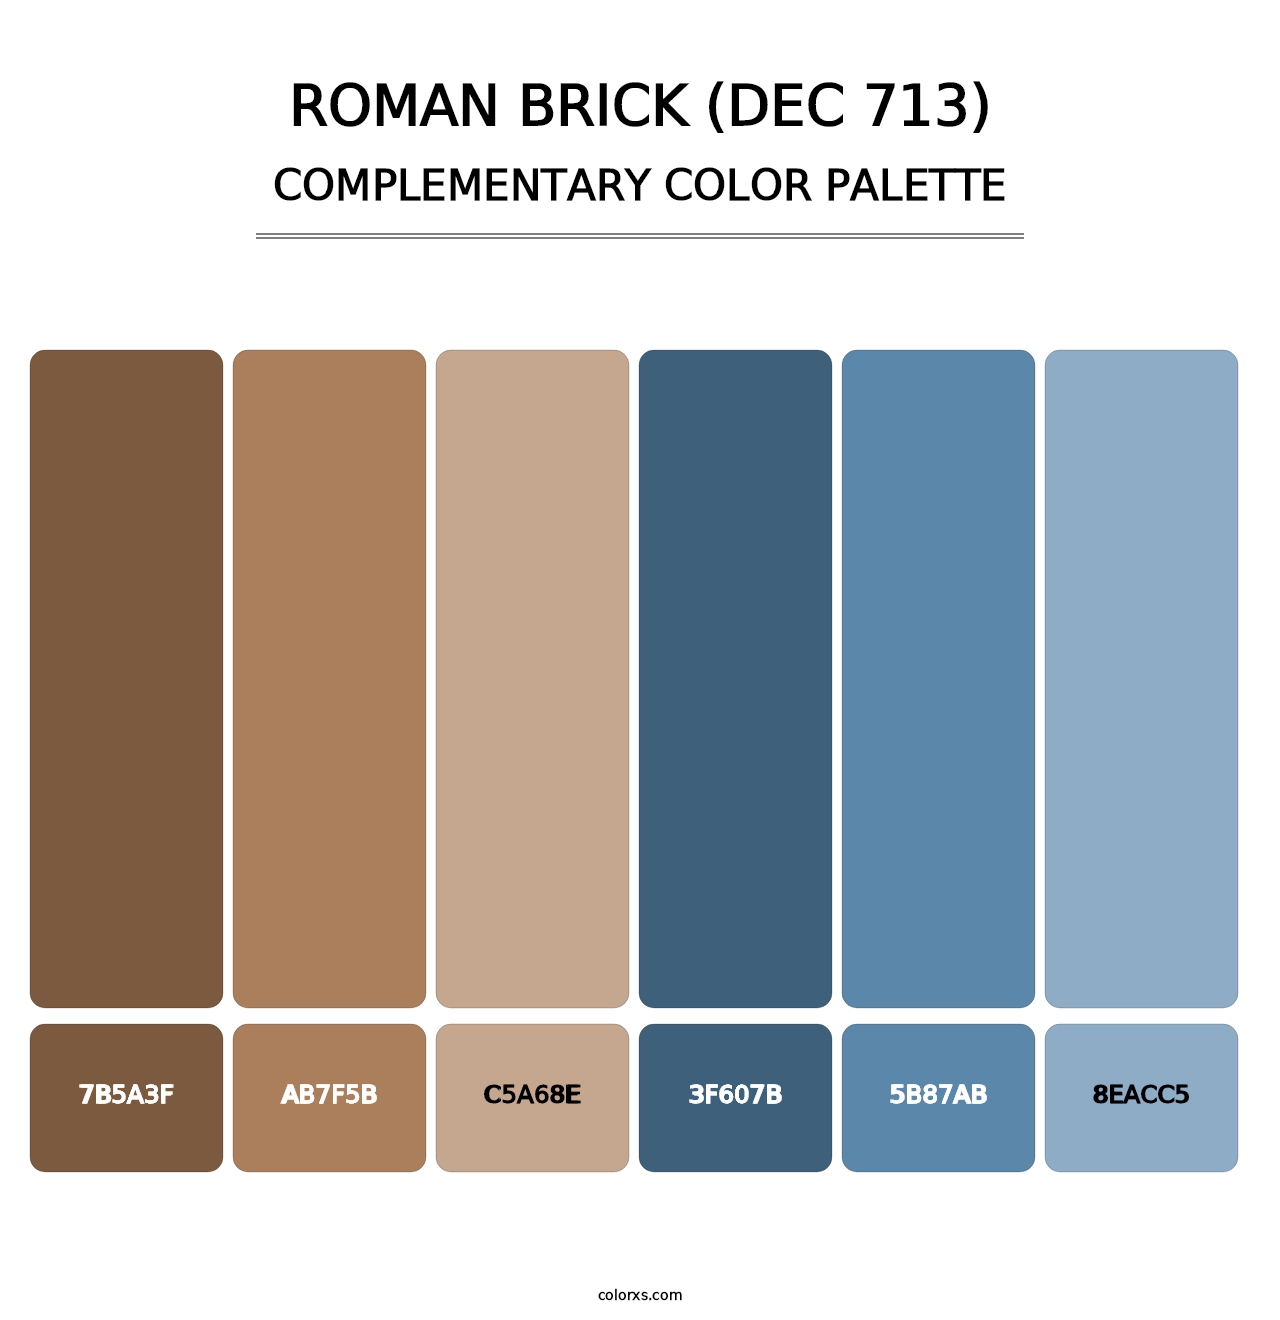 Roman Brick (DEC 713) - Complementary Color Palette